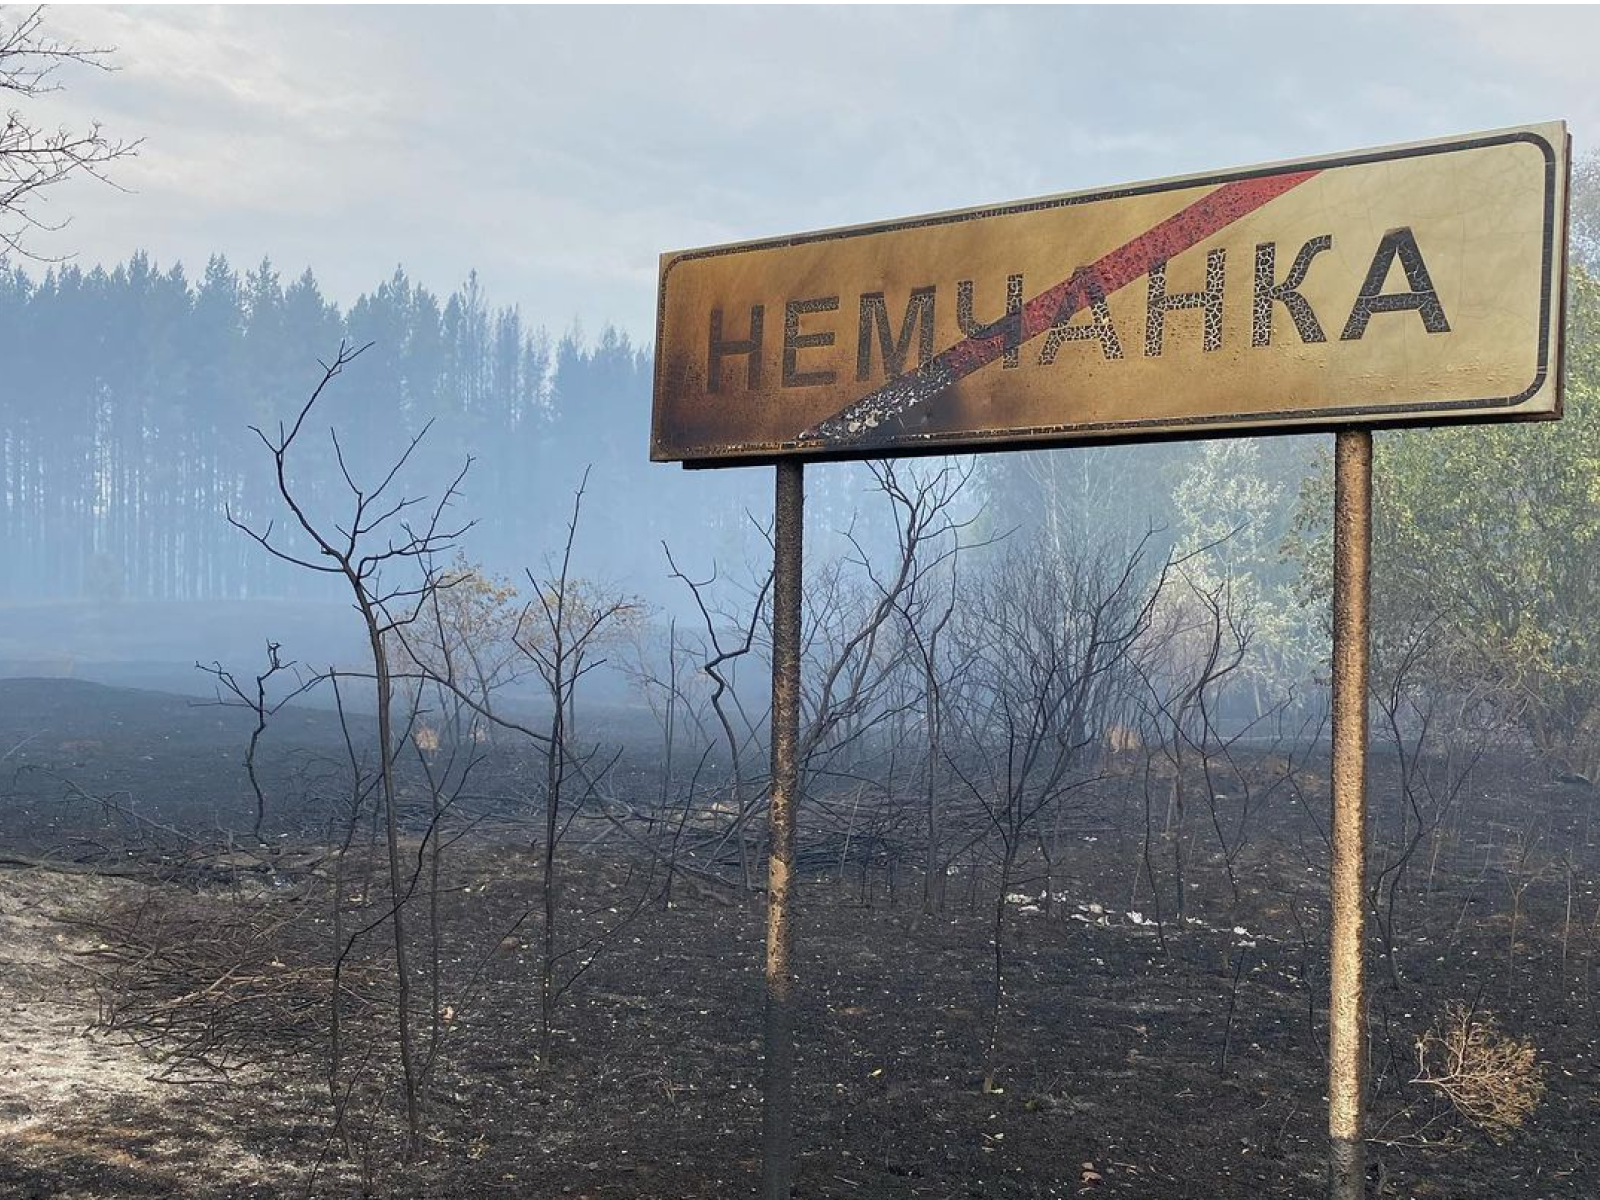  «Не могли спрогнозировать, куда переметнется огонь в следующую минуту»: жители Борского района о пожаре